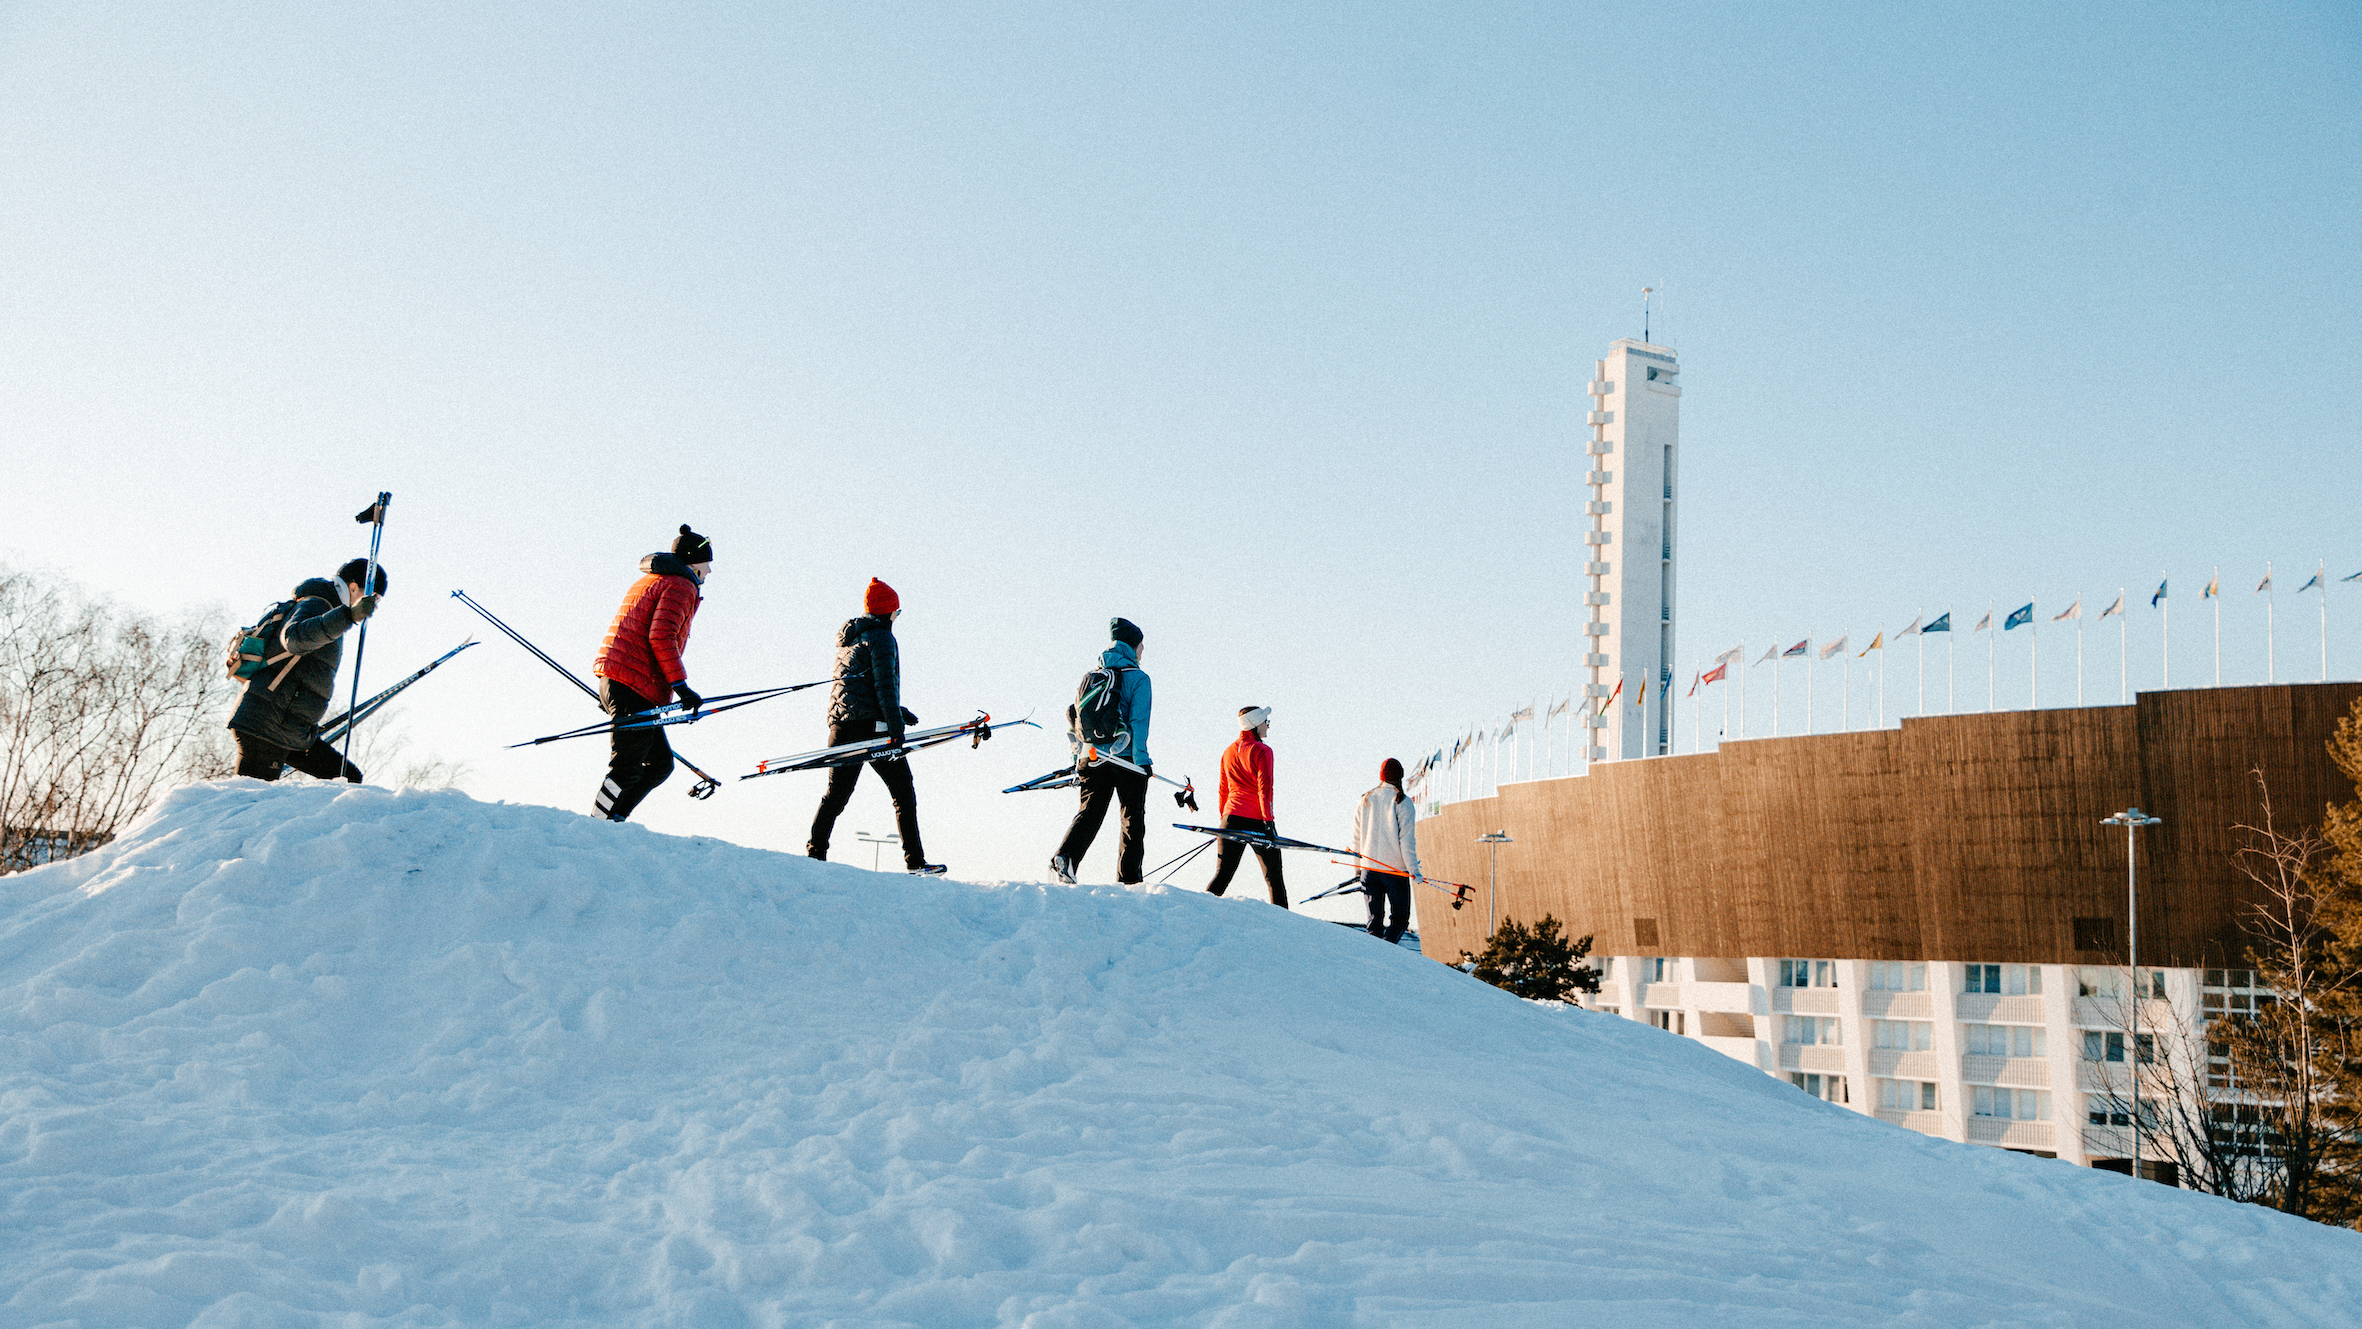 En grupp av människor med skidor och stavar går på nerför en snöbacke.